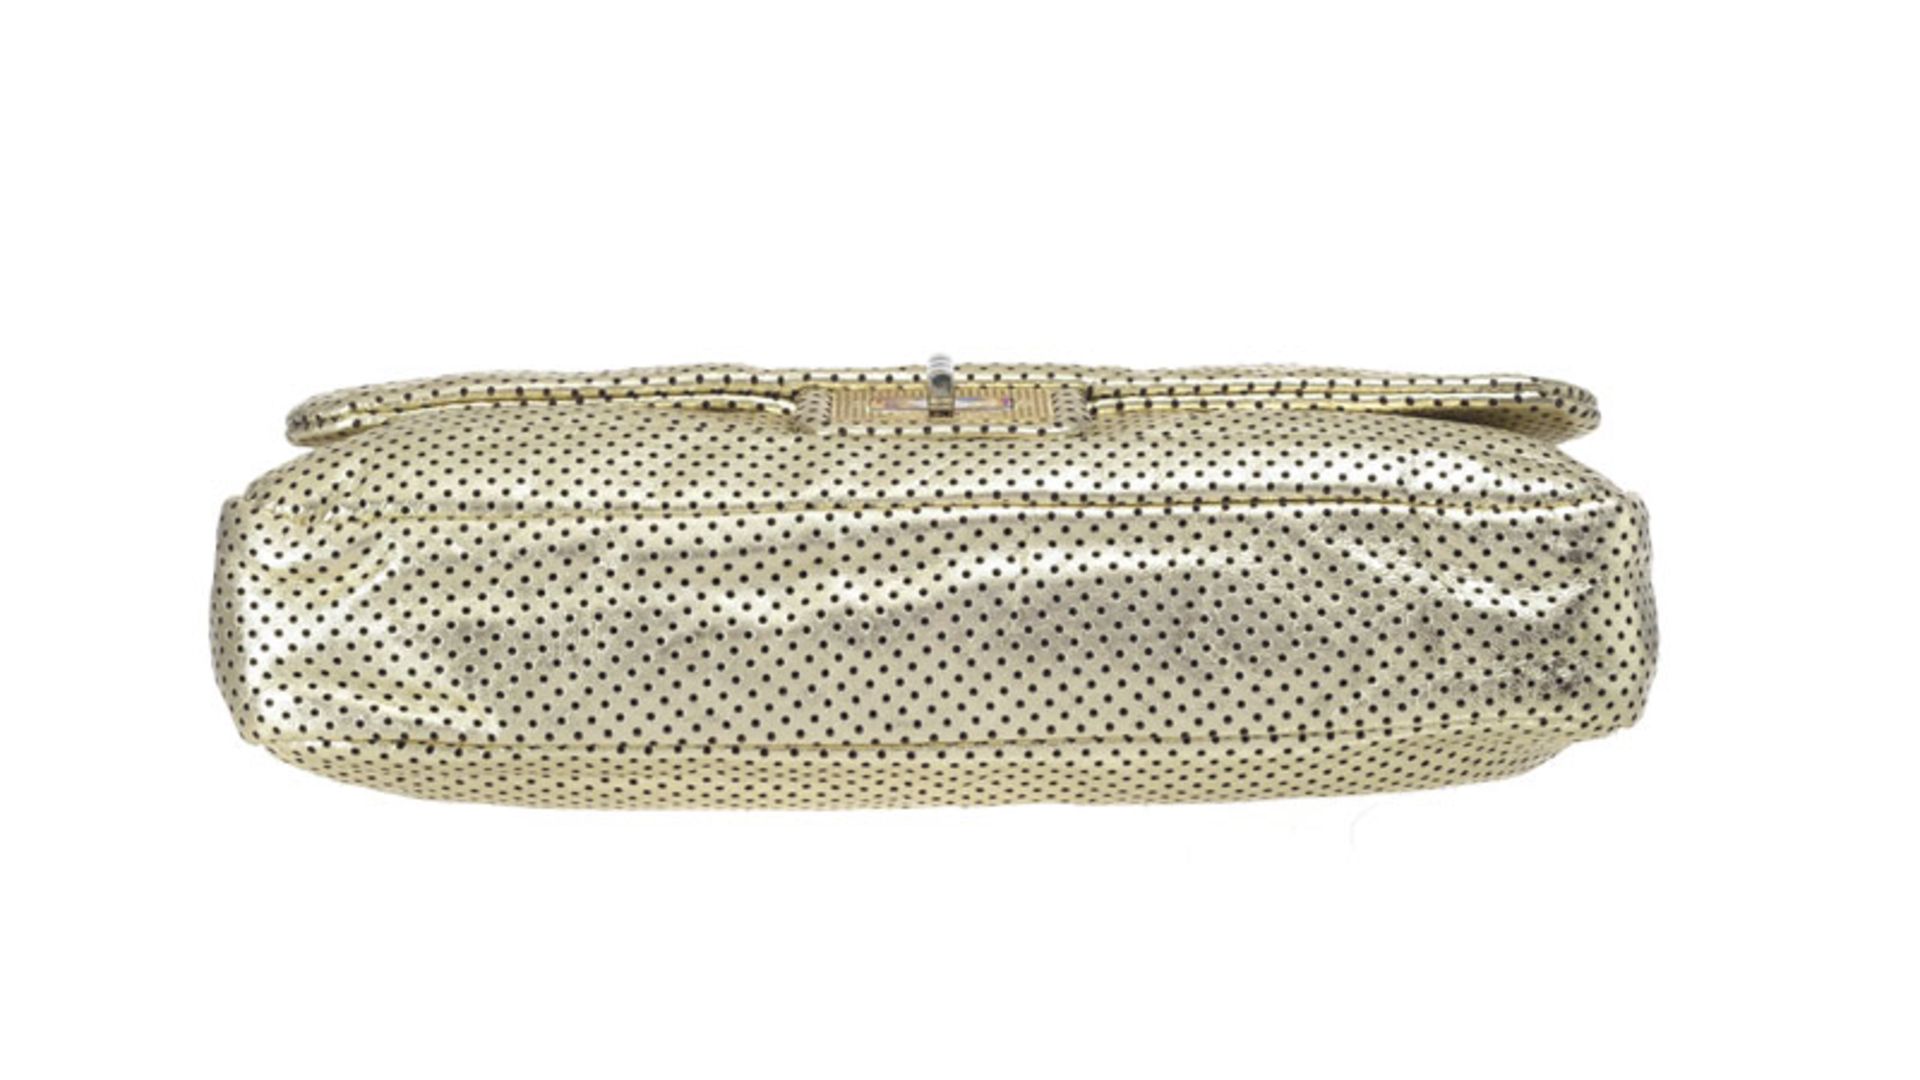 Chanel, sac 2.55 en cuir métallisé or et perforé, année 2009, rabat simple avec bandoulière à chaîne - Image 3 of 3